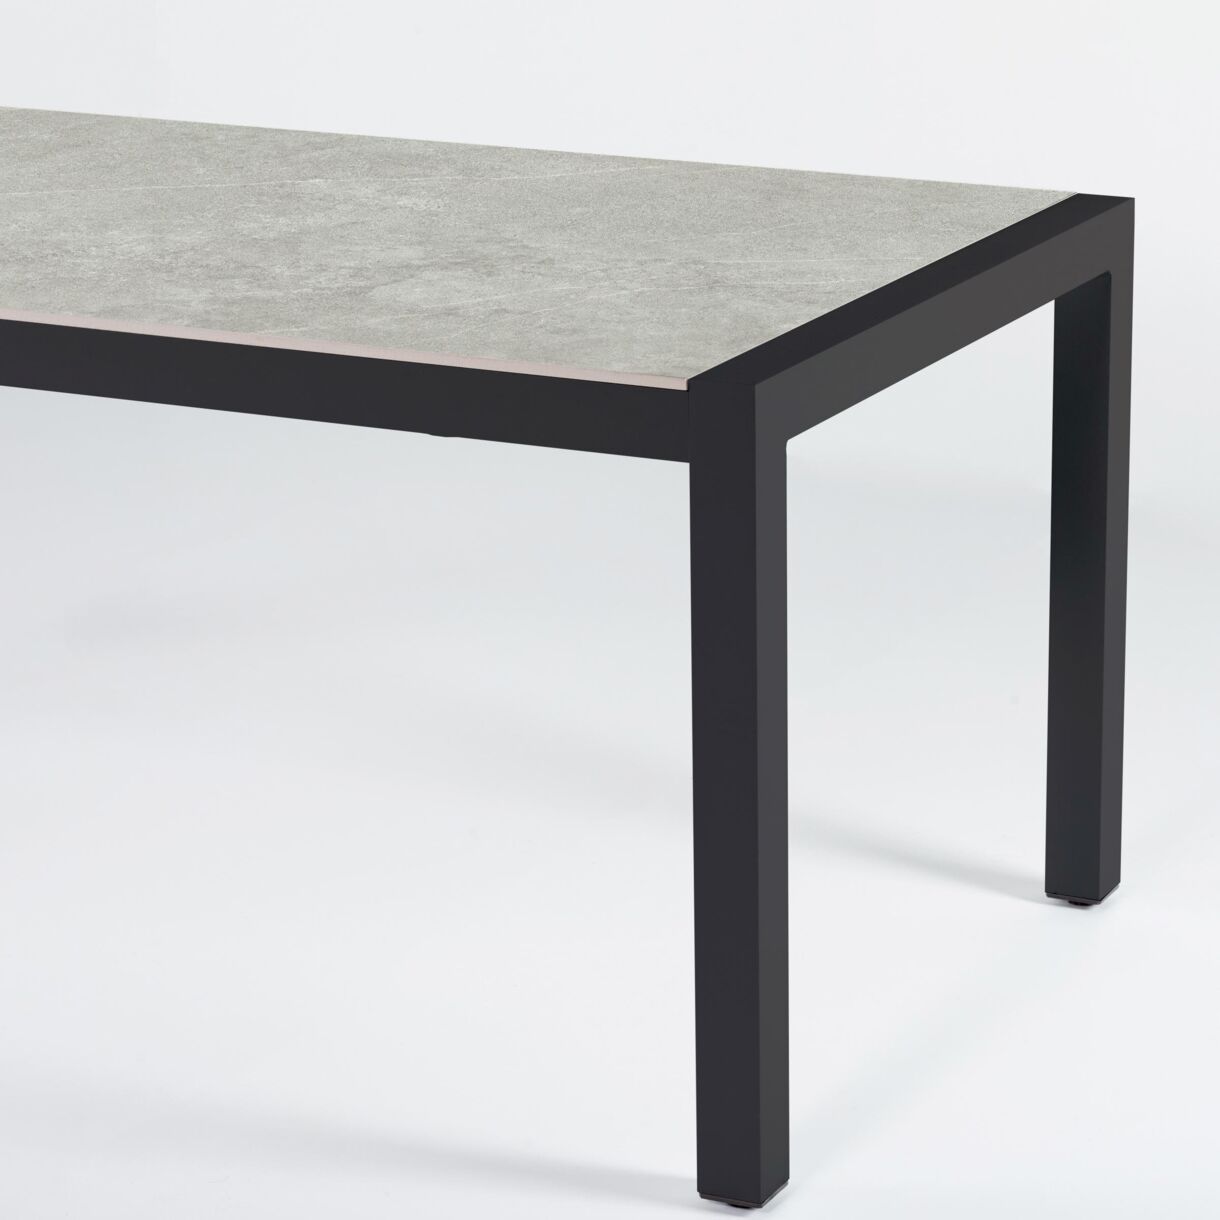 Tavolo da giardino 8 posti Alluminio/Ceramica Modena (180 x 90 cm) - Grigio antracite/Grigio chiaro